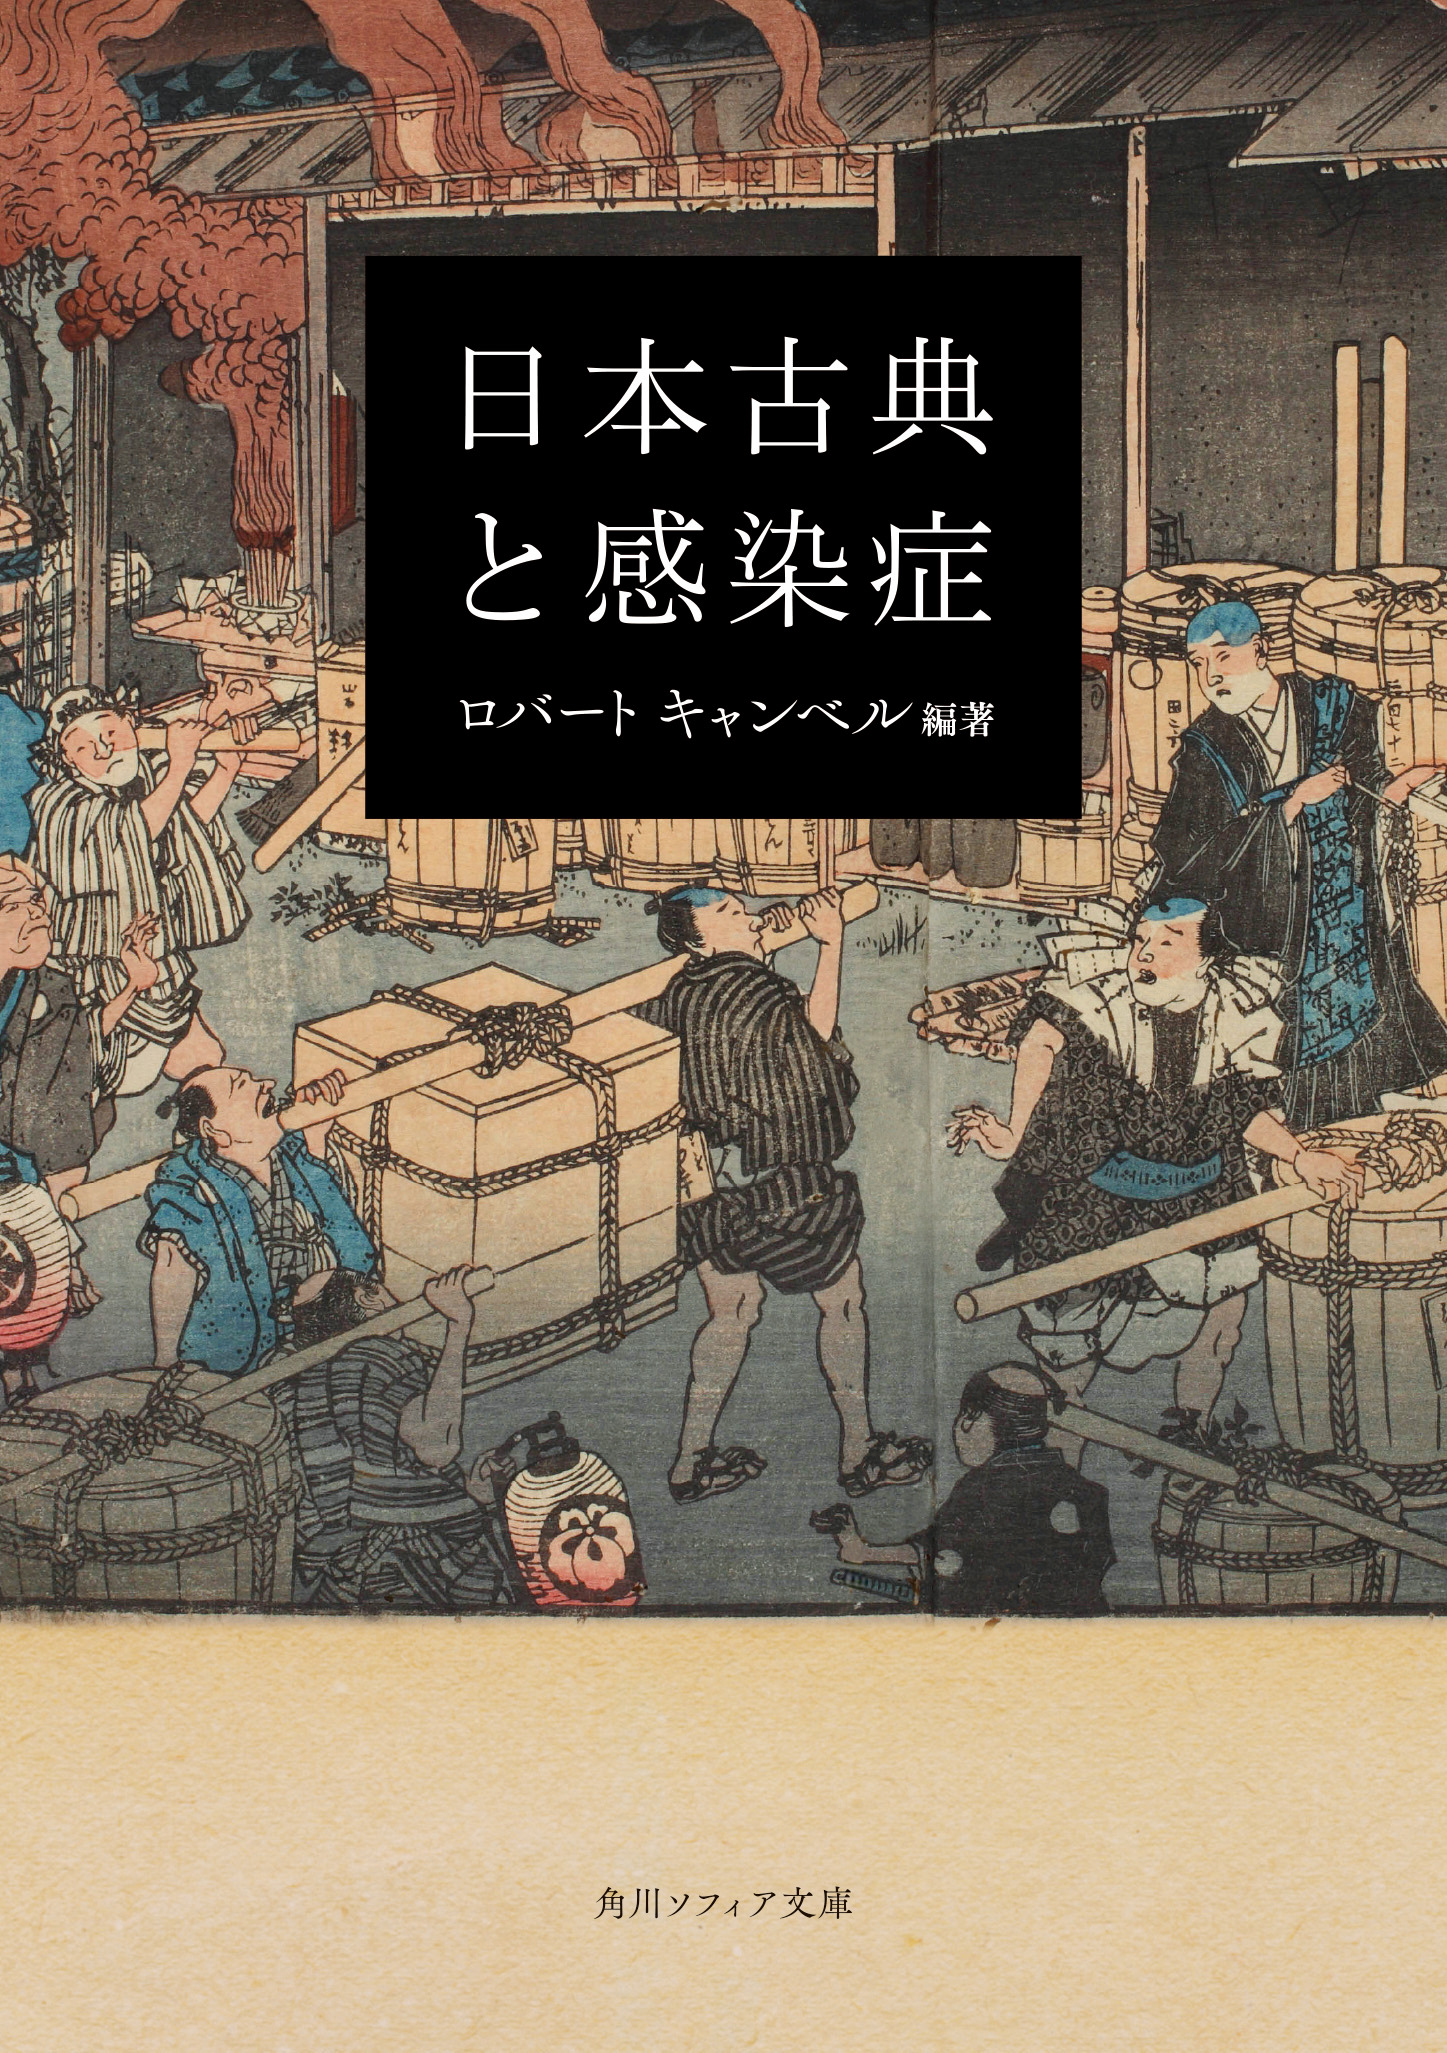 コレラ流行時の江戸の様子を描いた「安政箇労痢流行記」の一部の挿絵